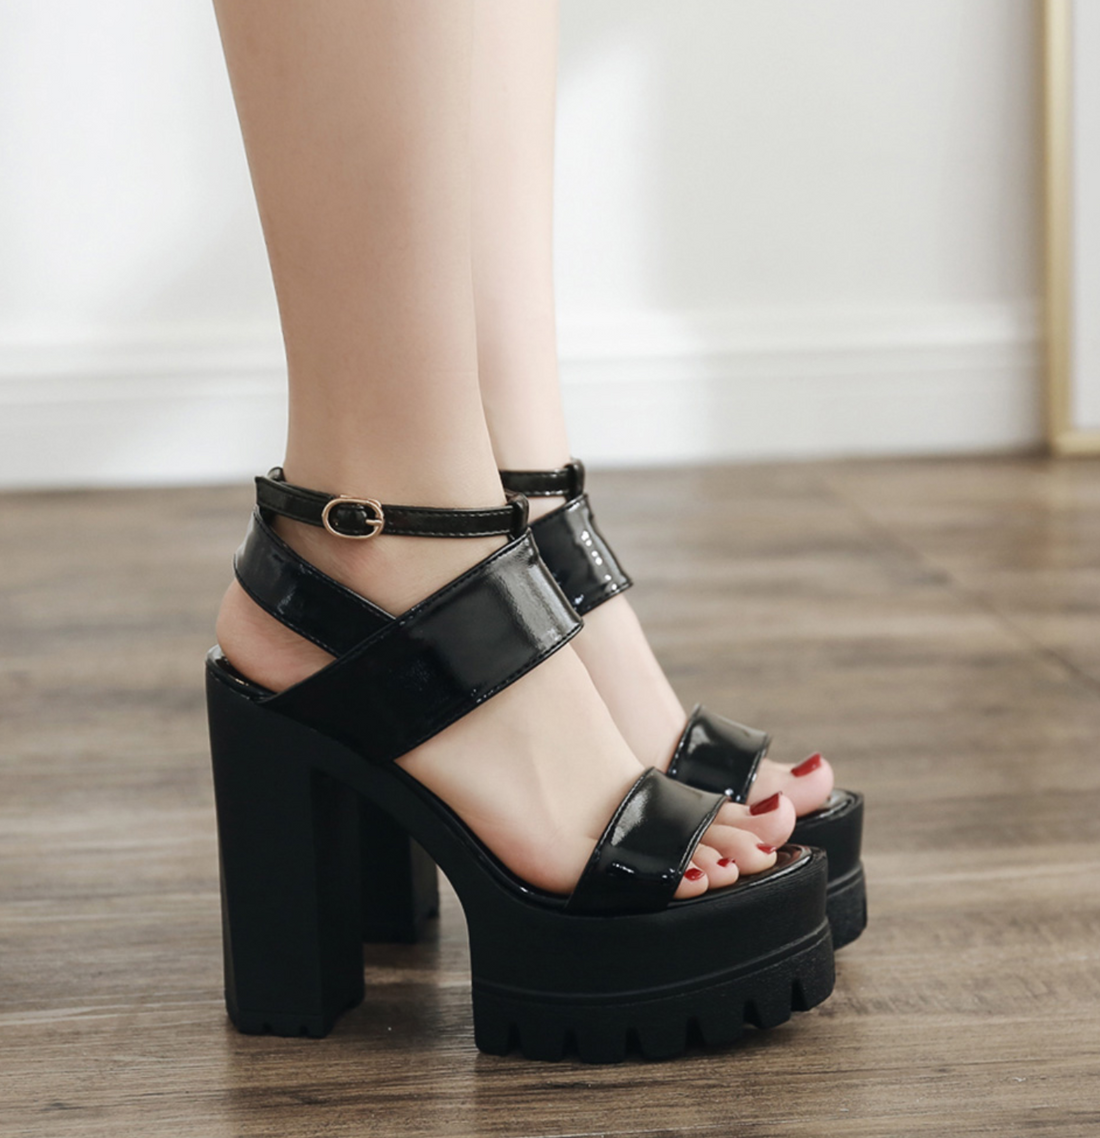 Women's Summer Soft Leather High Heels Sandals